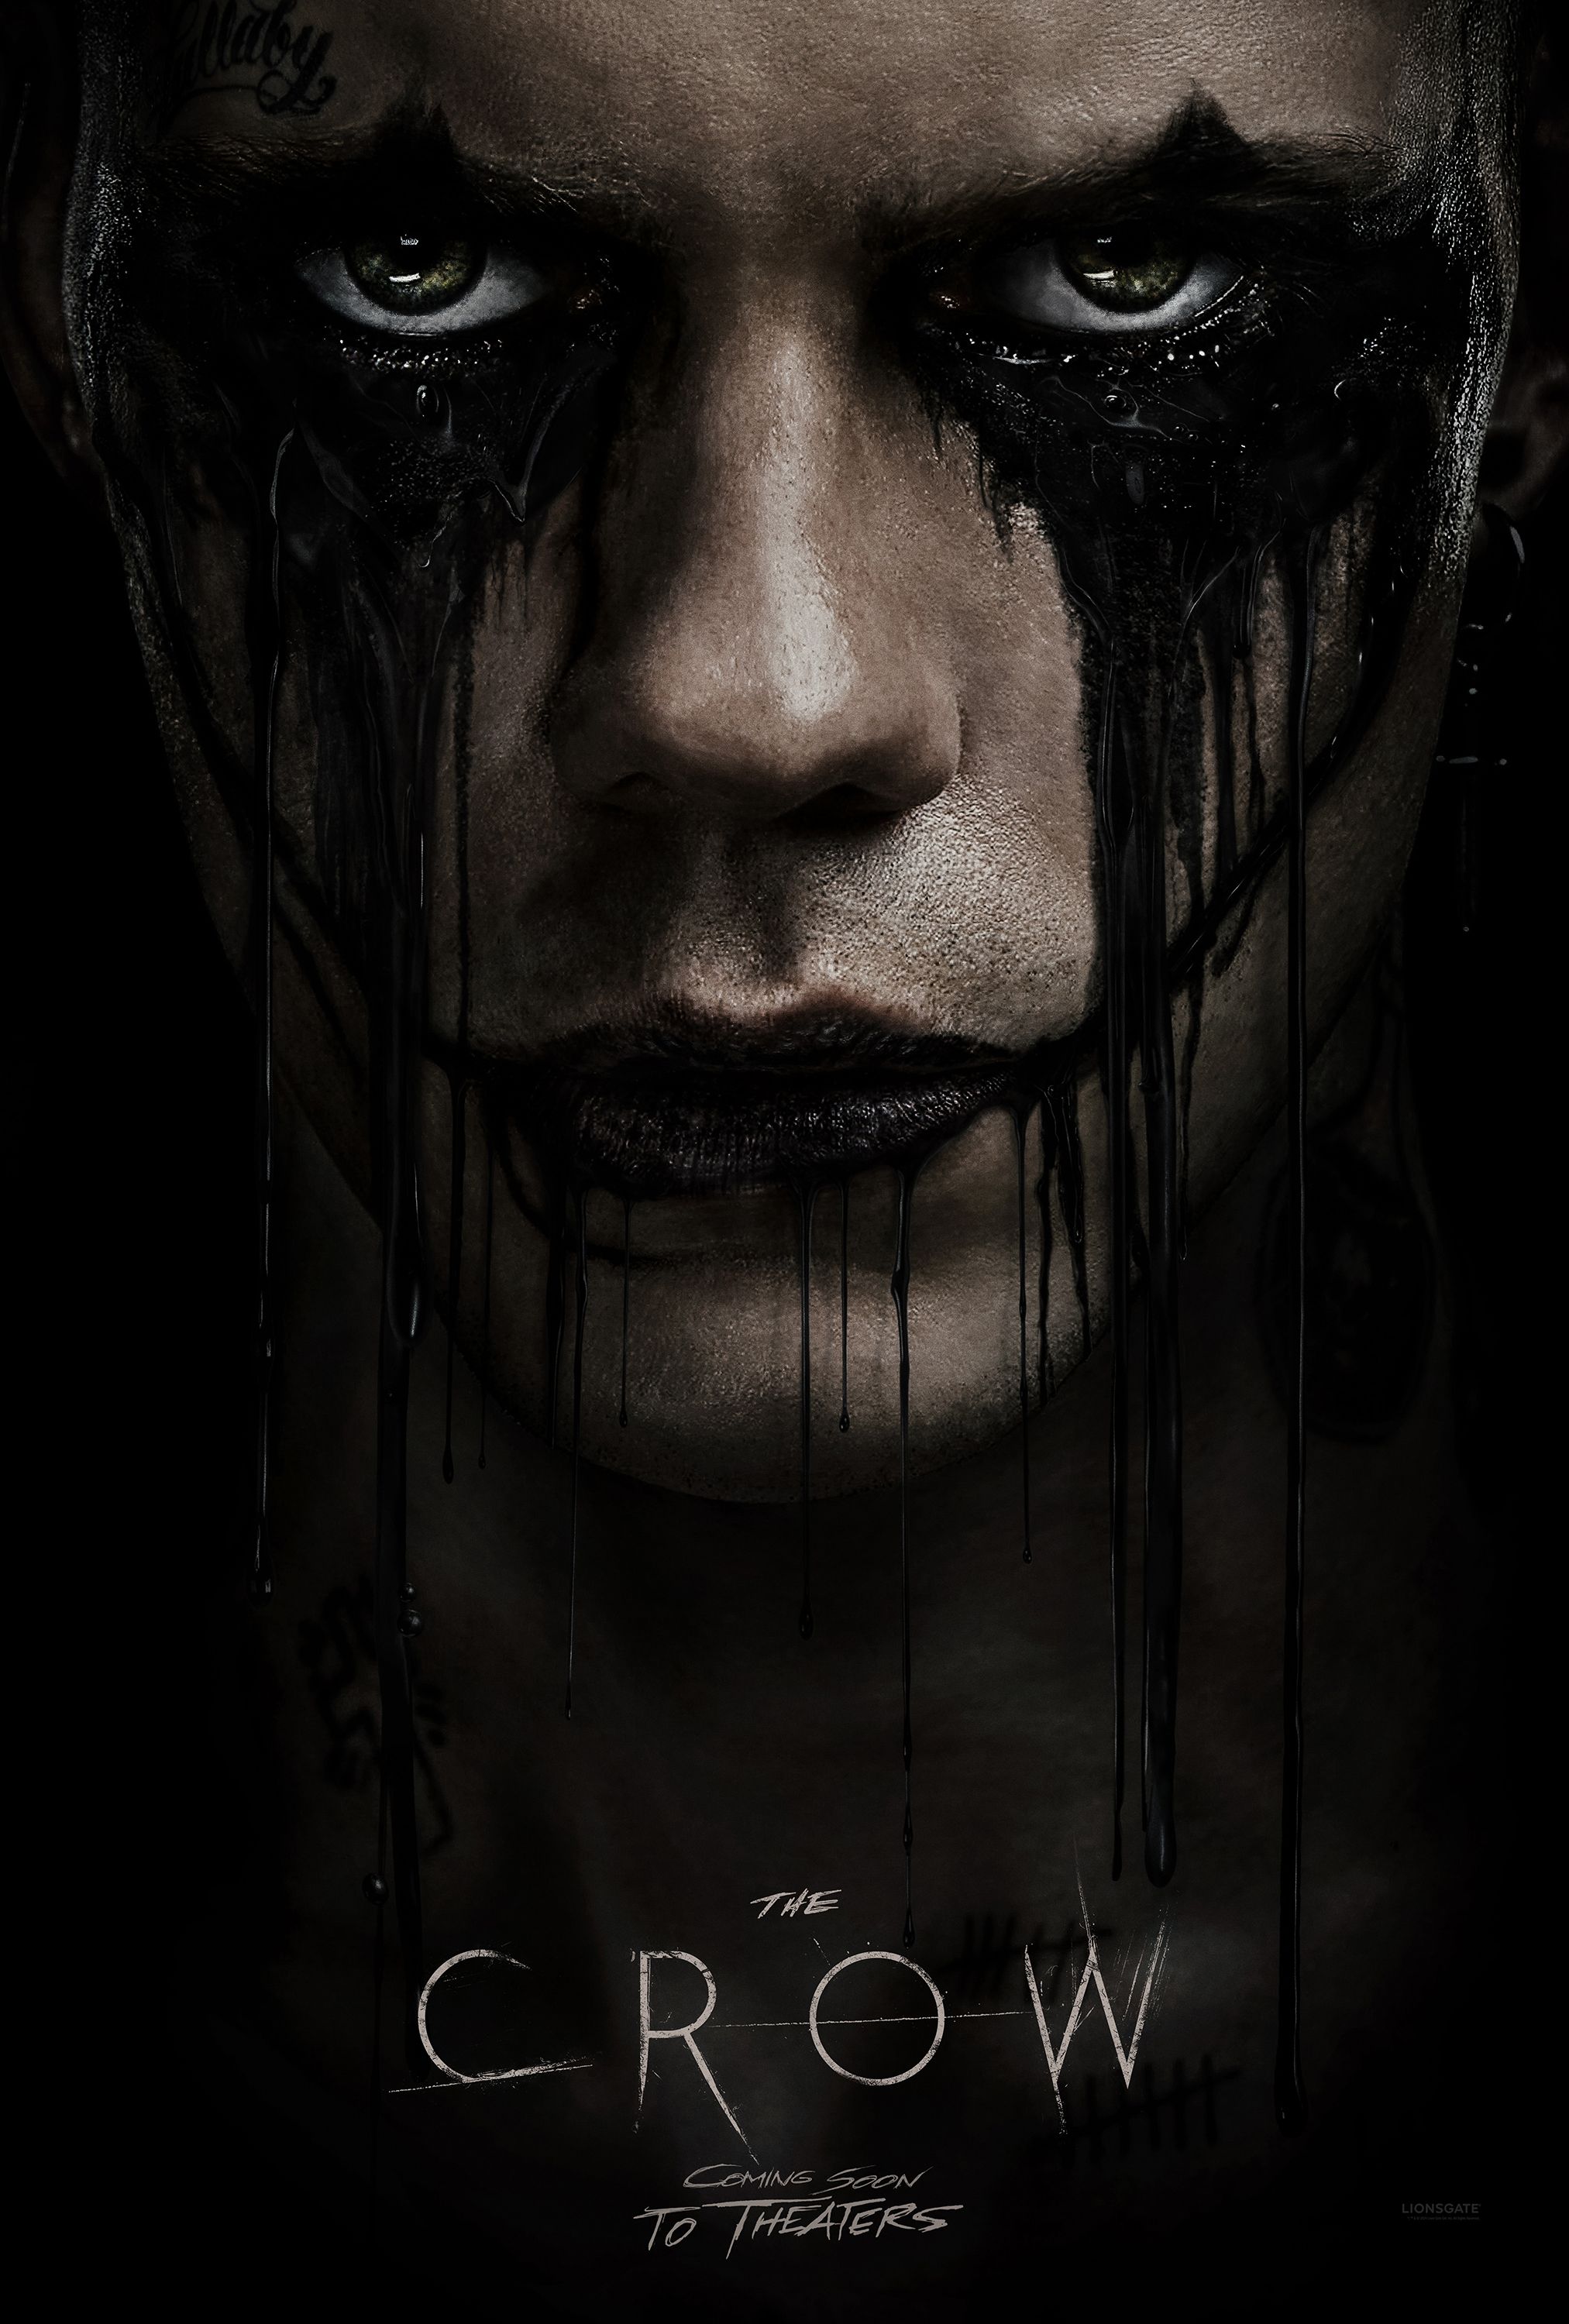 Póster de la película The Crow Reboot que muestra a Bill Skarsgård como Eric Draven con pintura negra goteando por su rostro.